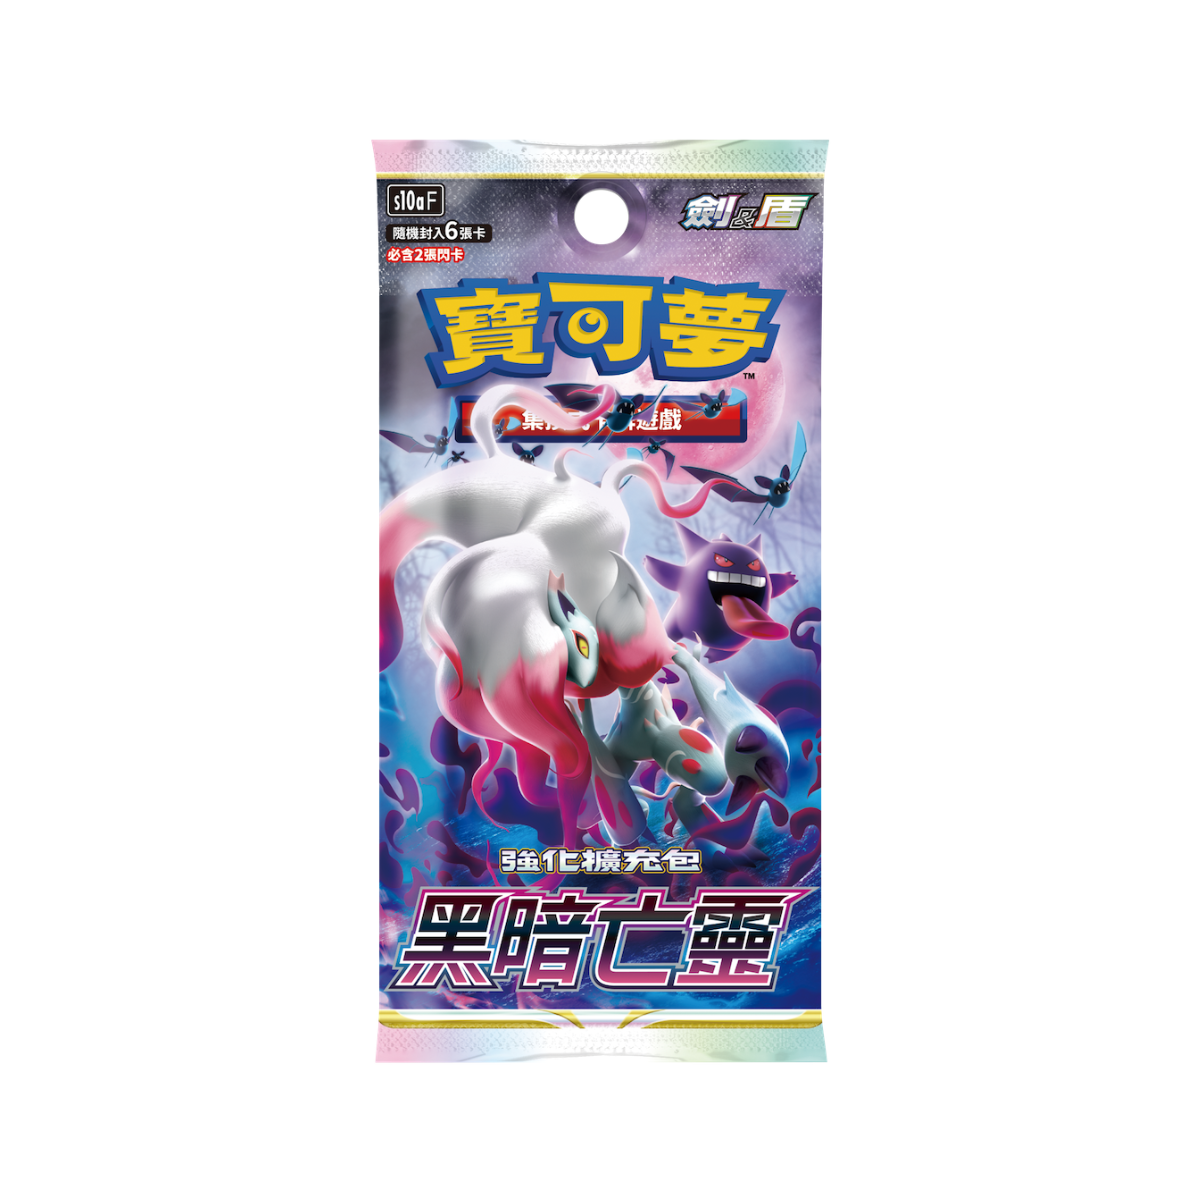 Pokemon TCG 剑 & 盾 强化擴充包 黑暗亡靈 [S10aF] (Chinese)-Single Pack (Random)-The Pokémon Company International-Ace Cards & Collectibles